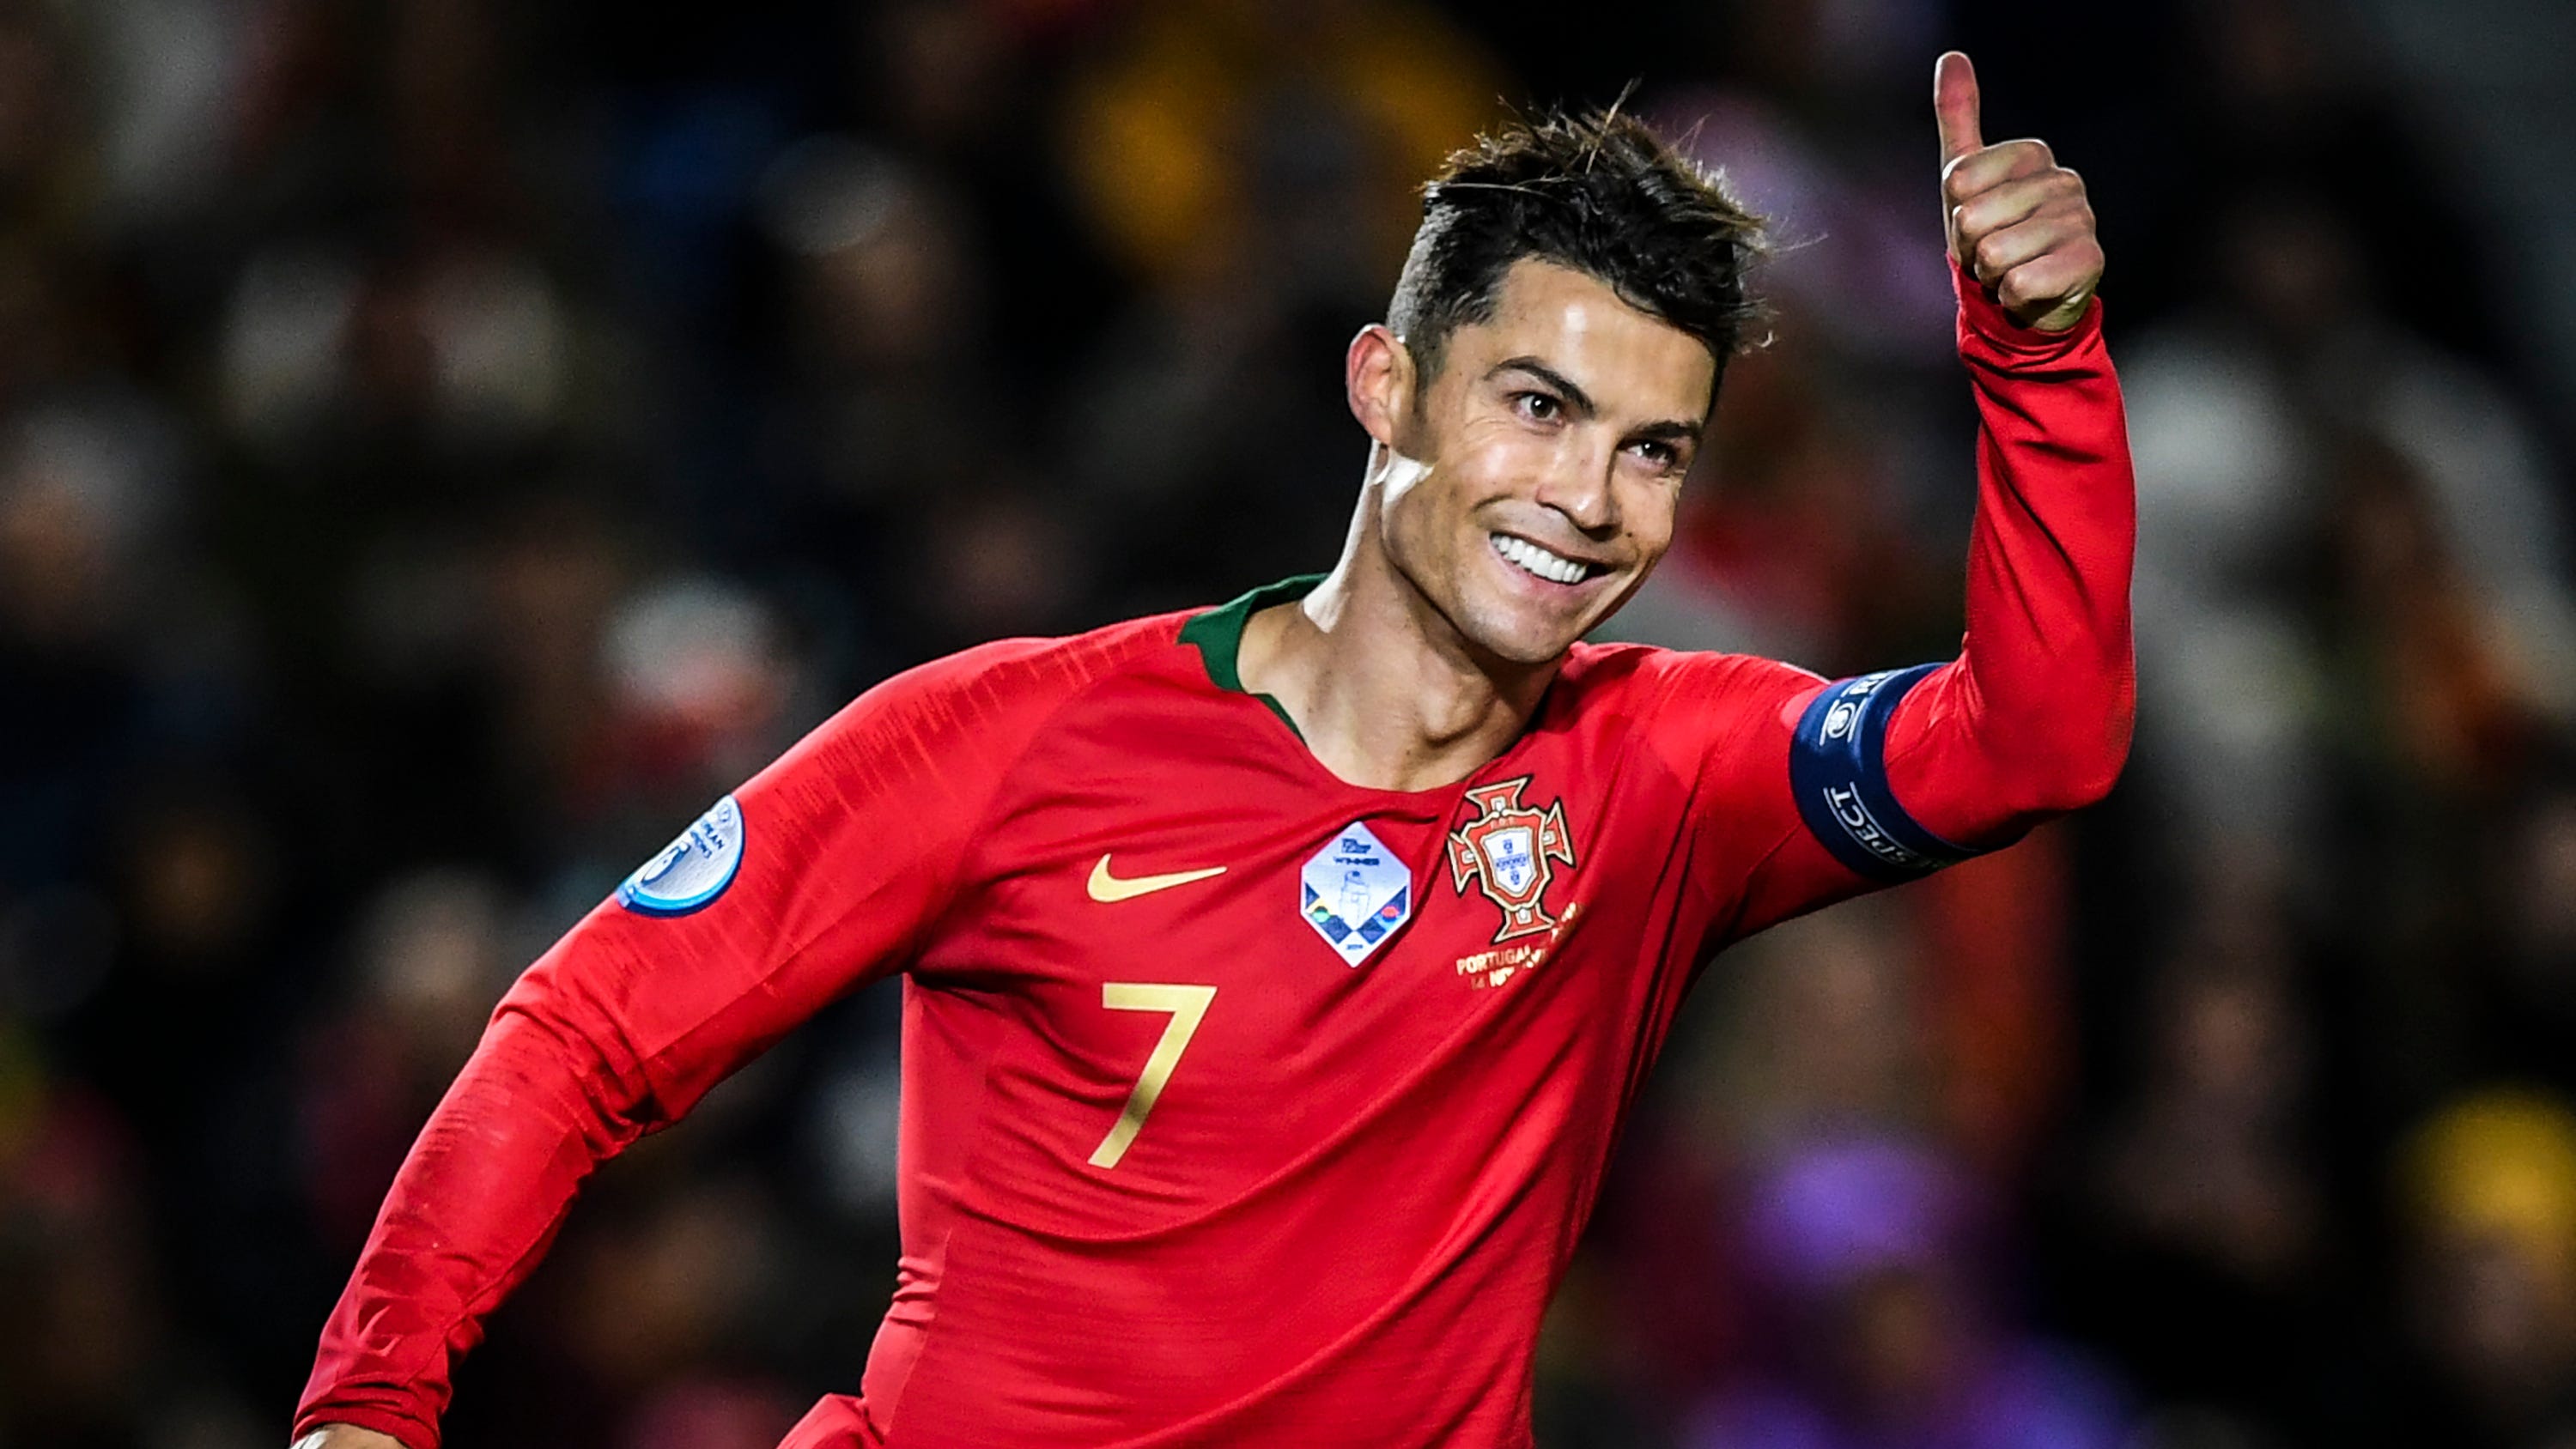 Ronaldo tài trợ giúp Bồ Đào Nha chống chọi với dịch bệnh Covid-19 |  Goal.com Việt Nam